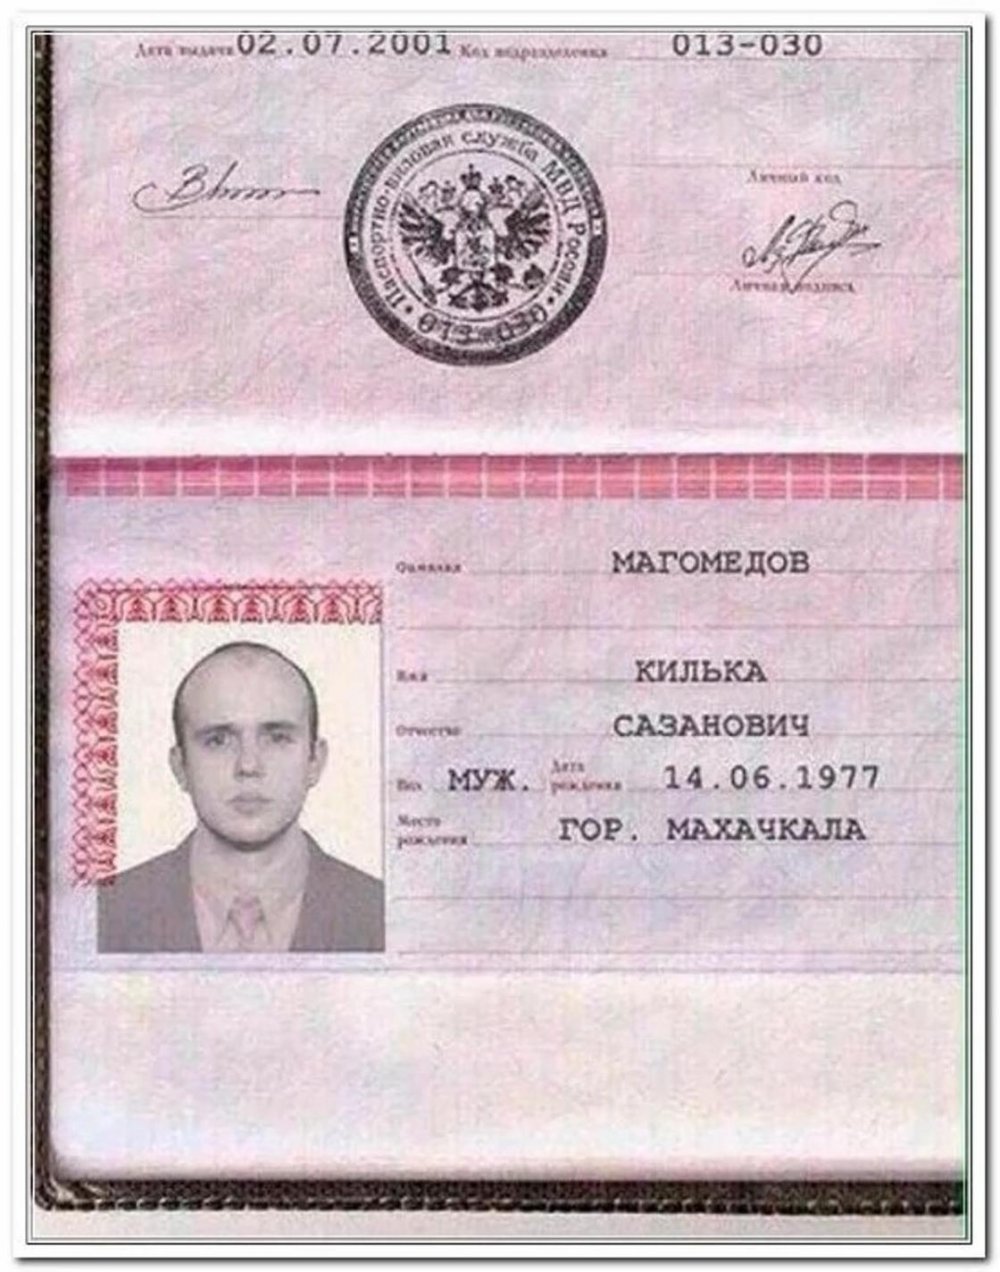 Необычные фамилии в паспорте